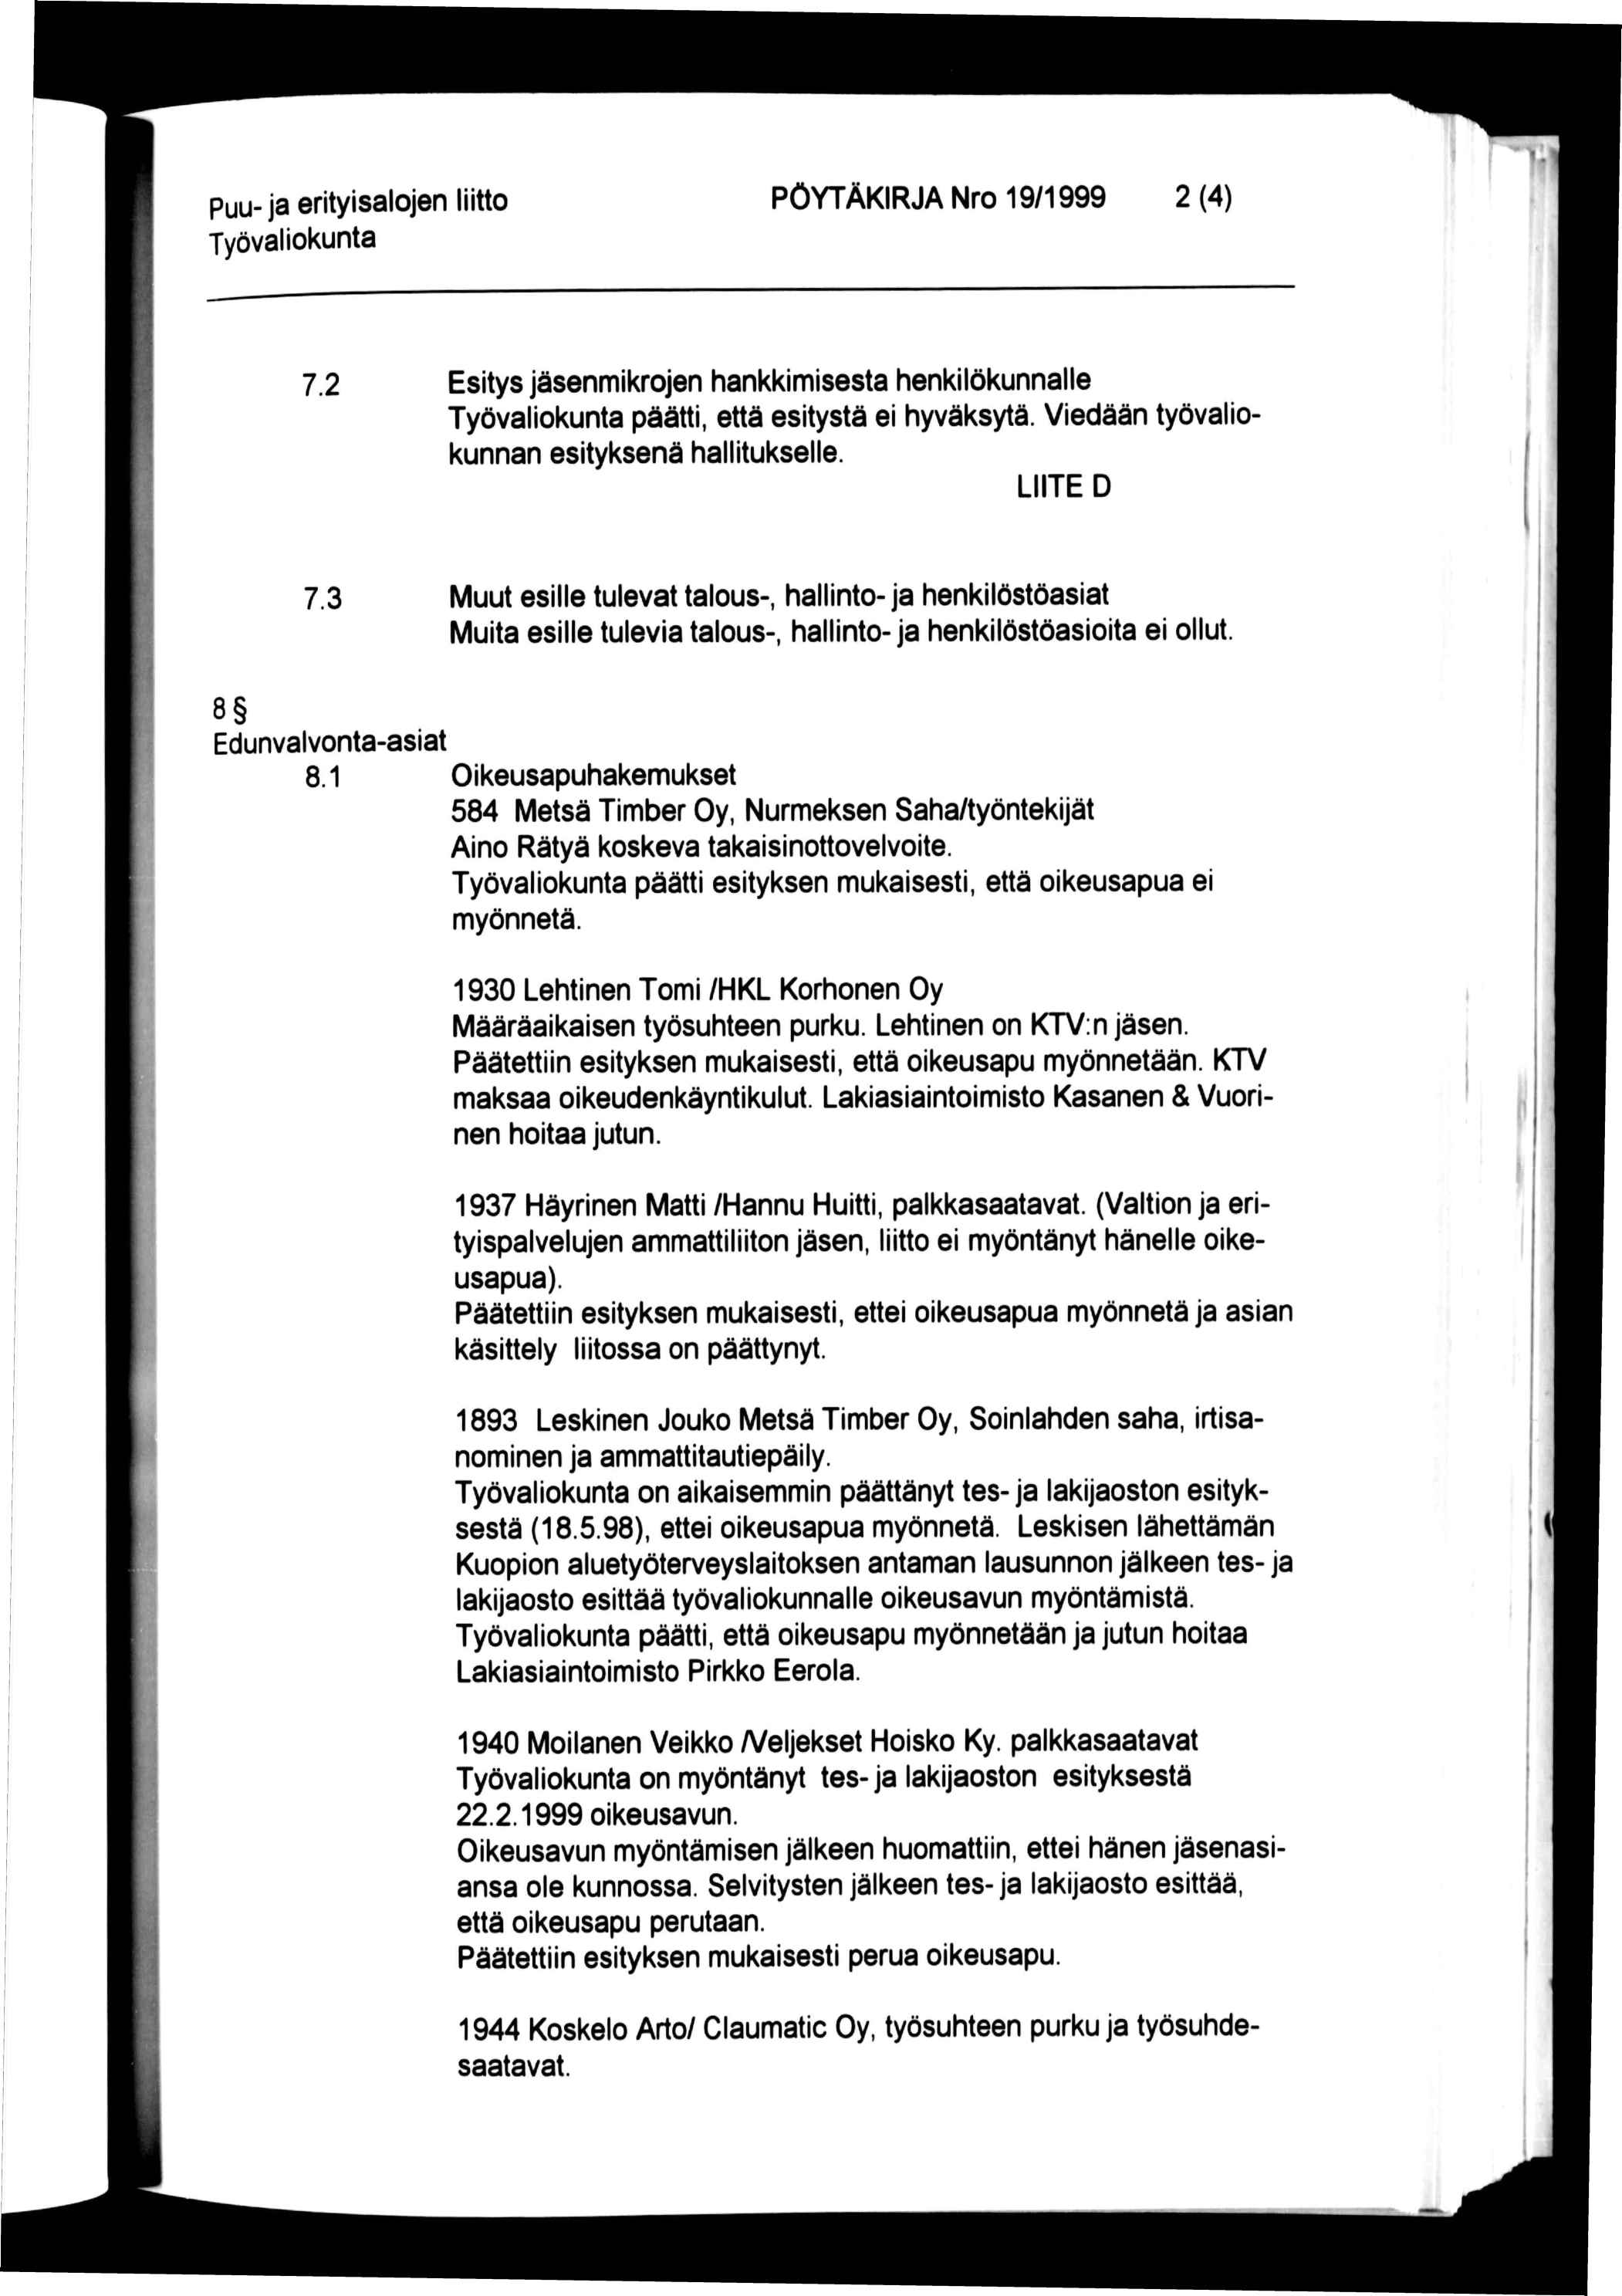 PÖYTÄKIRJA Nro 19/1999 2 (4) 7.2 Esitys jäsenmikrojen hankkimisesta henkilökunnalle päätti, että esitystä ei hyväksytä. Viedään työvalio kunnan esityksenä hallitukselle. LIITE D 7.